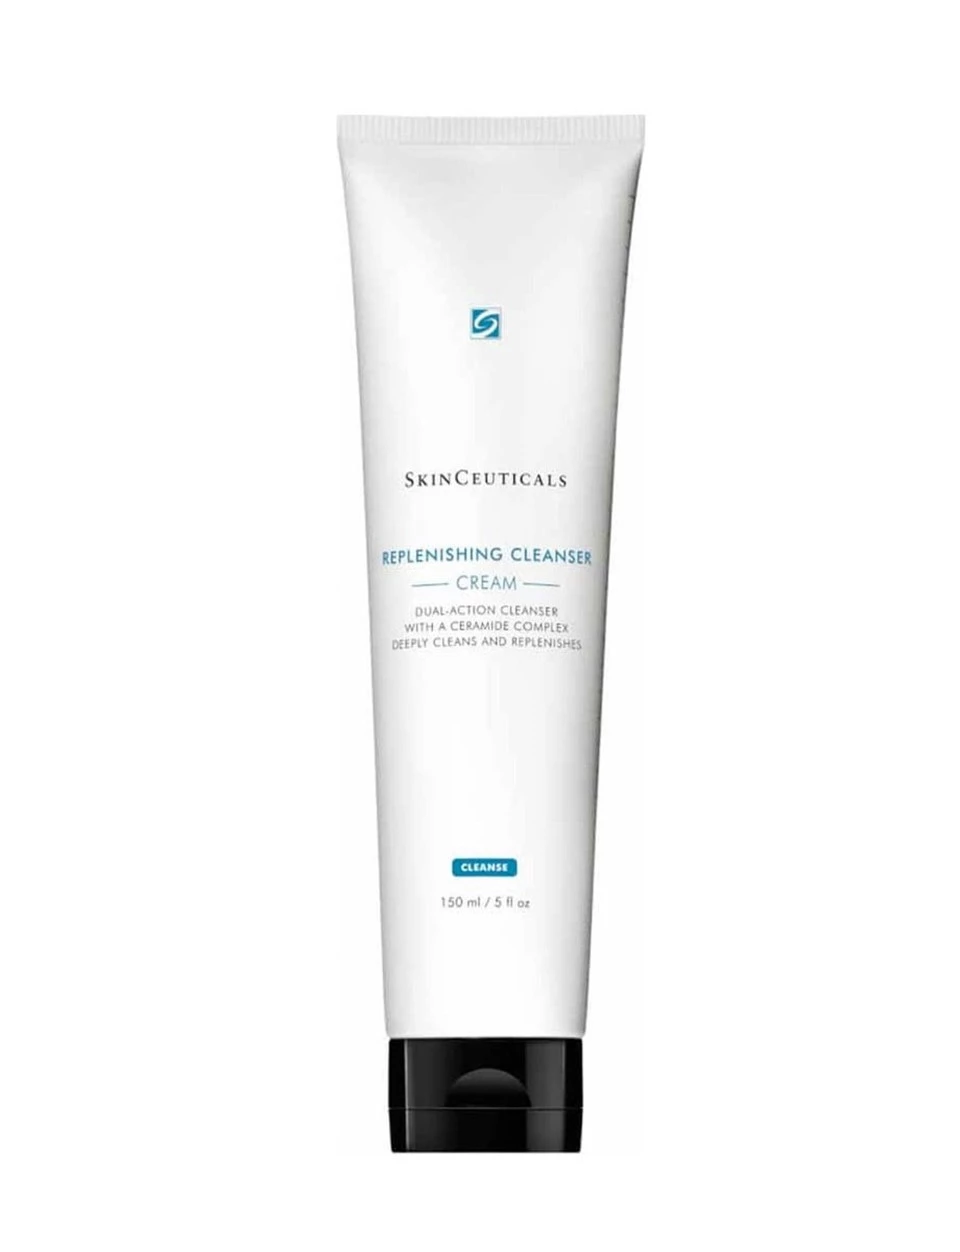 Skinceuticals Replenishing Cleanser Cream - Arındırıcı Temizleme Kremi 150ml